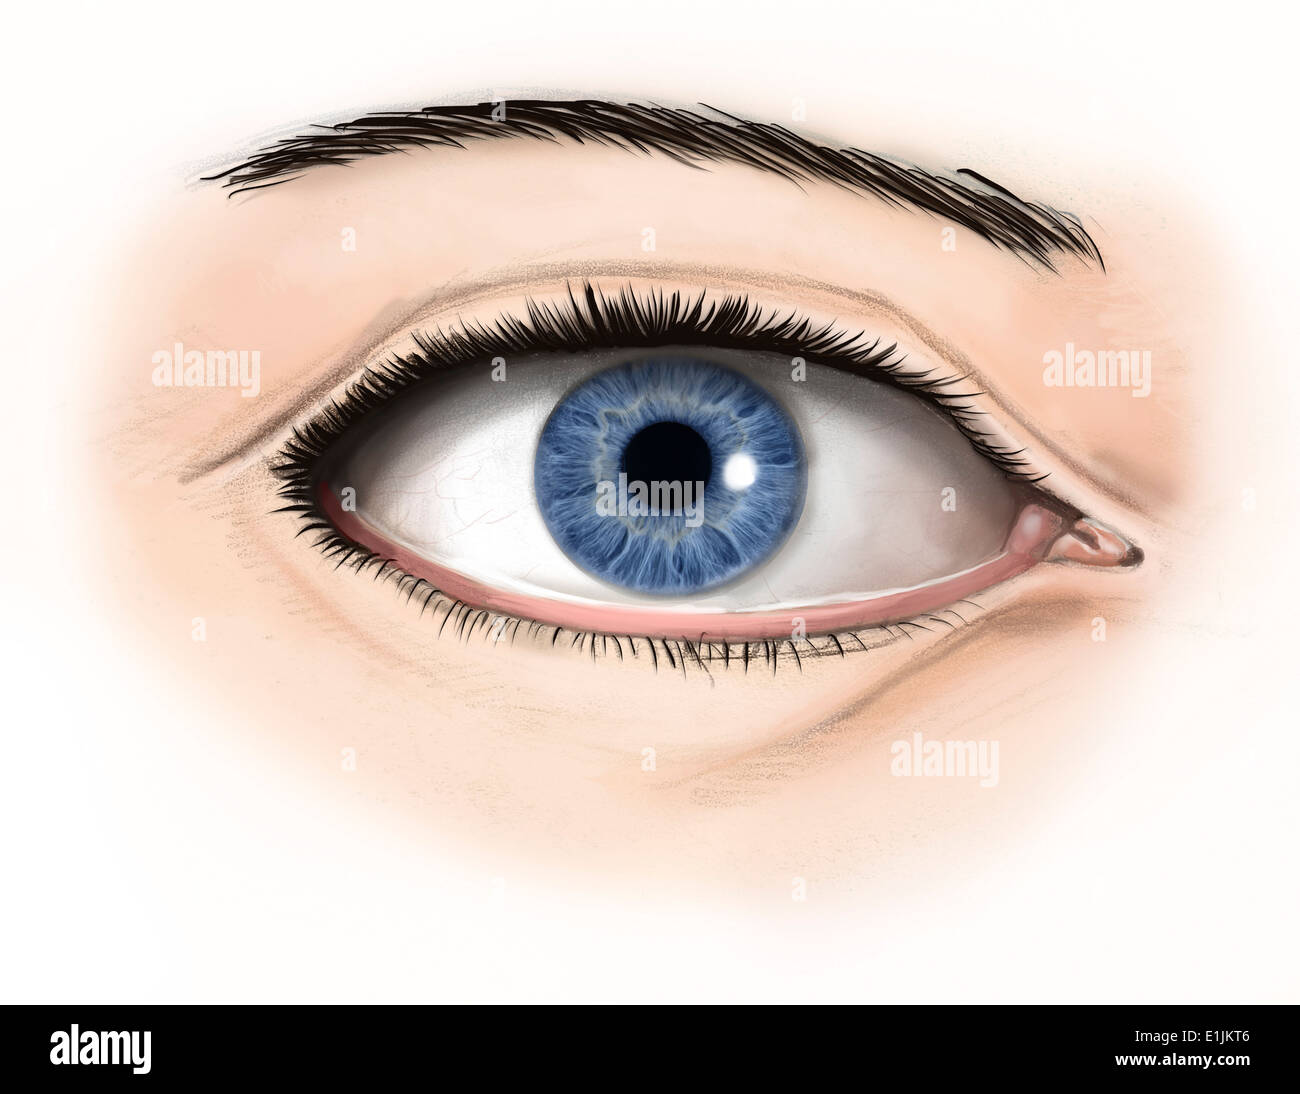 Anatomia esterna dell'occhio umano. Foto Stock